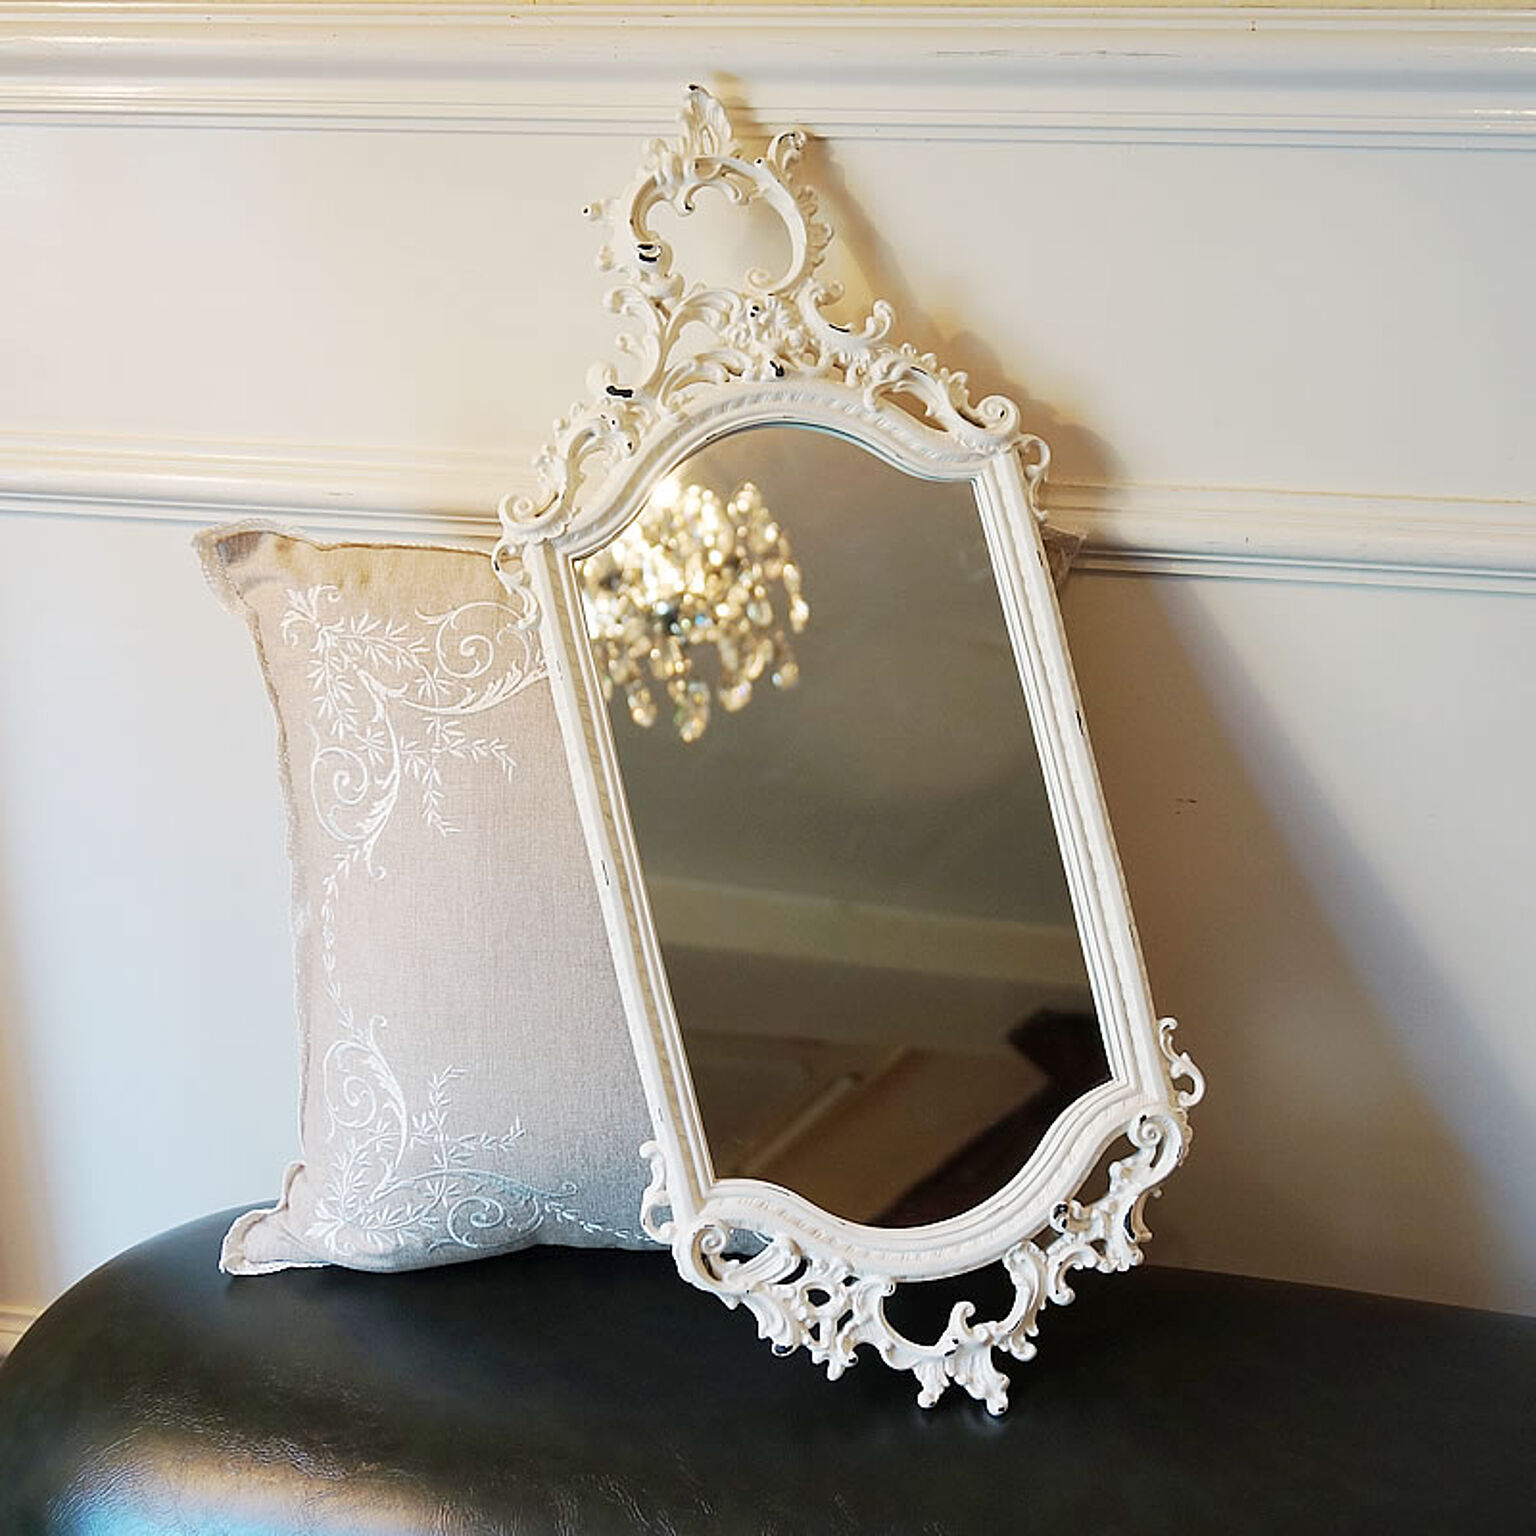 鏡 壁掛け イタリアスタイル クラシック風 壁掛けミラー 白 - 通販 